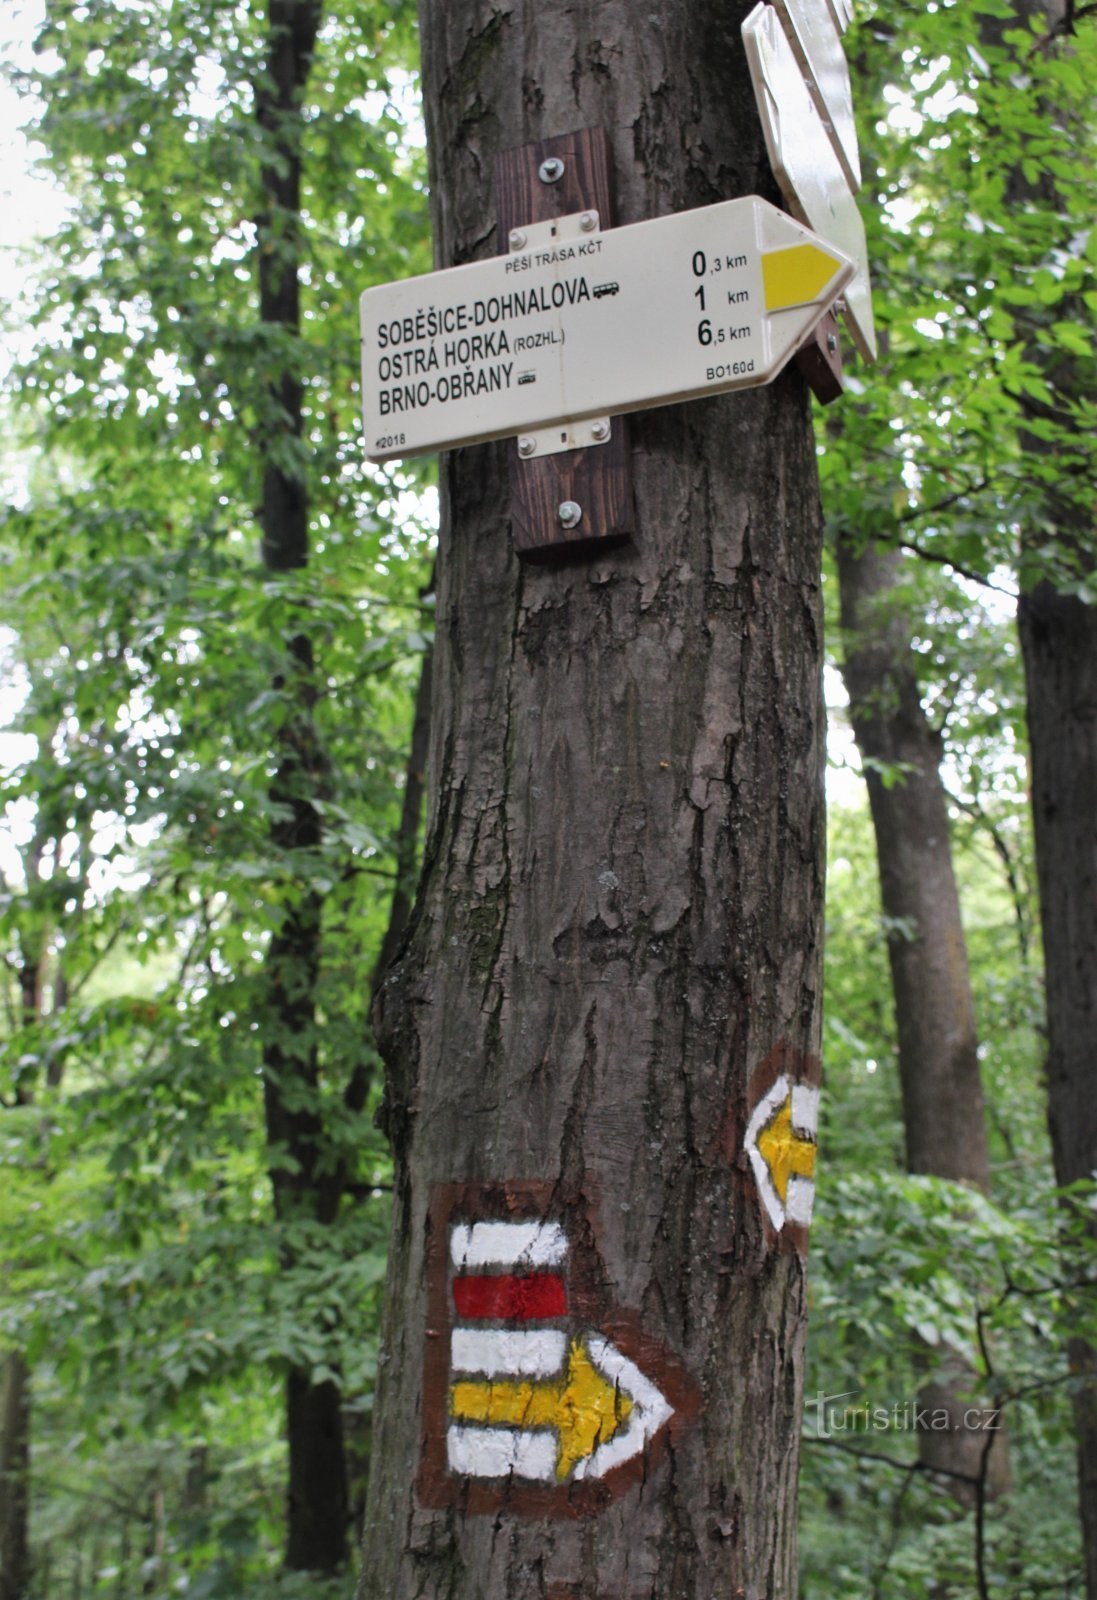 Răscruce turistică Soběšice-Klokočí